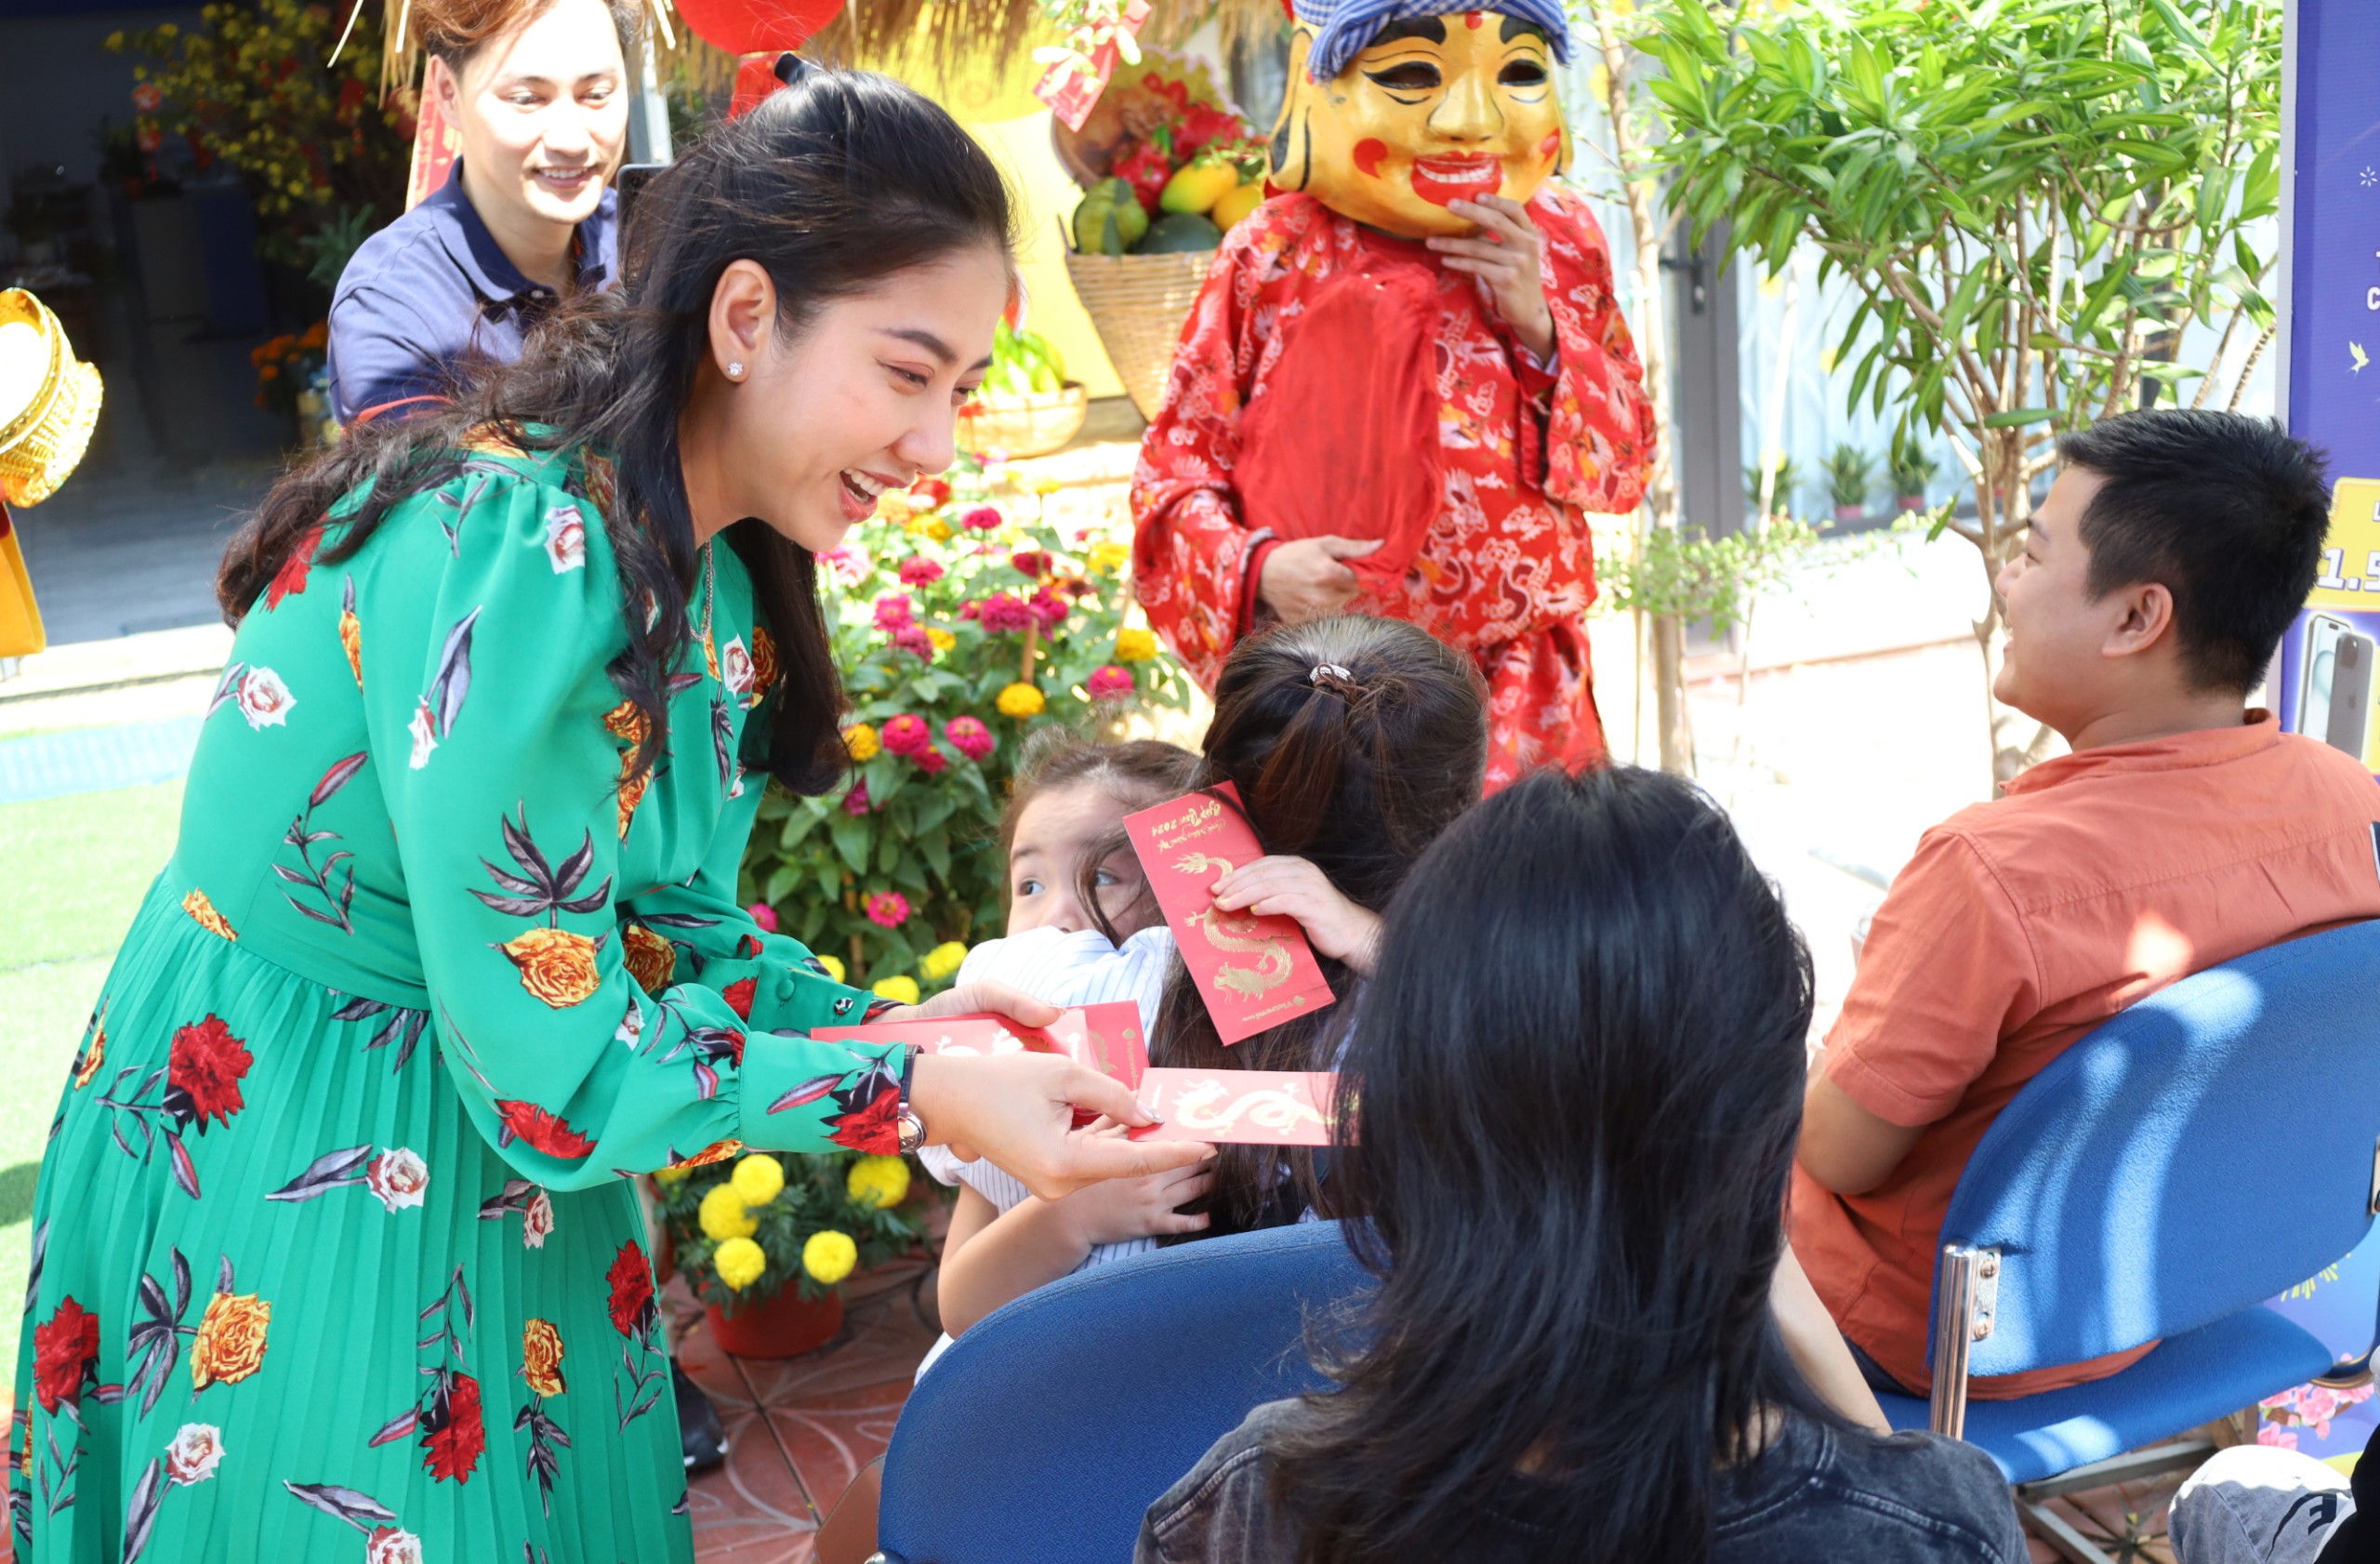 Bà Lê Đình Minh Thy - Giám đốc Vietravel Cần Thơ tặng lì xì cho những khách hàng xuất hành cùng Vietravel ngày Mùng 1 Tết.